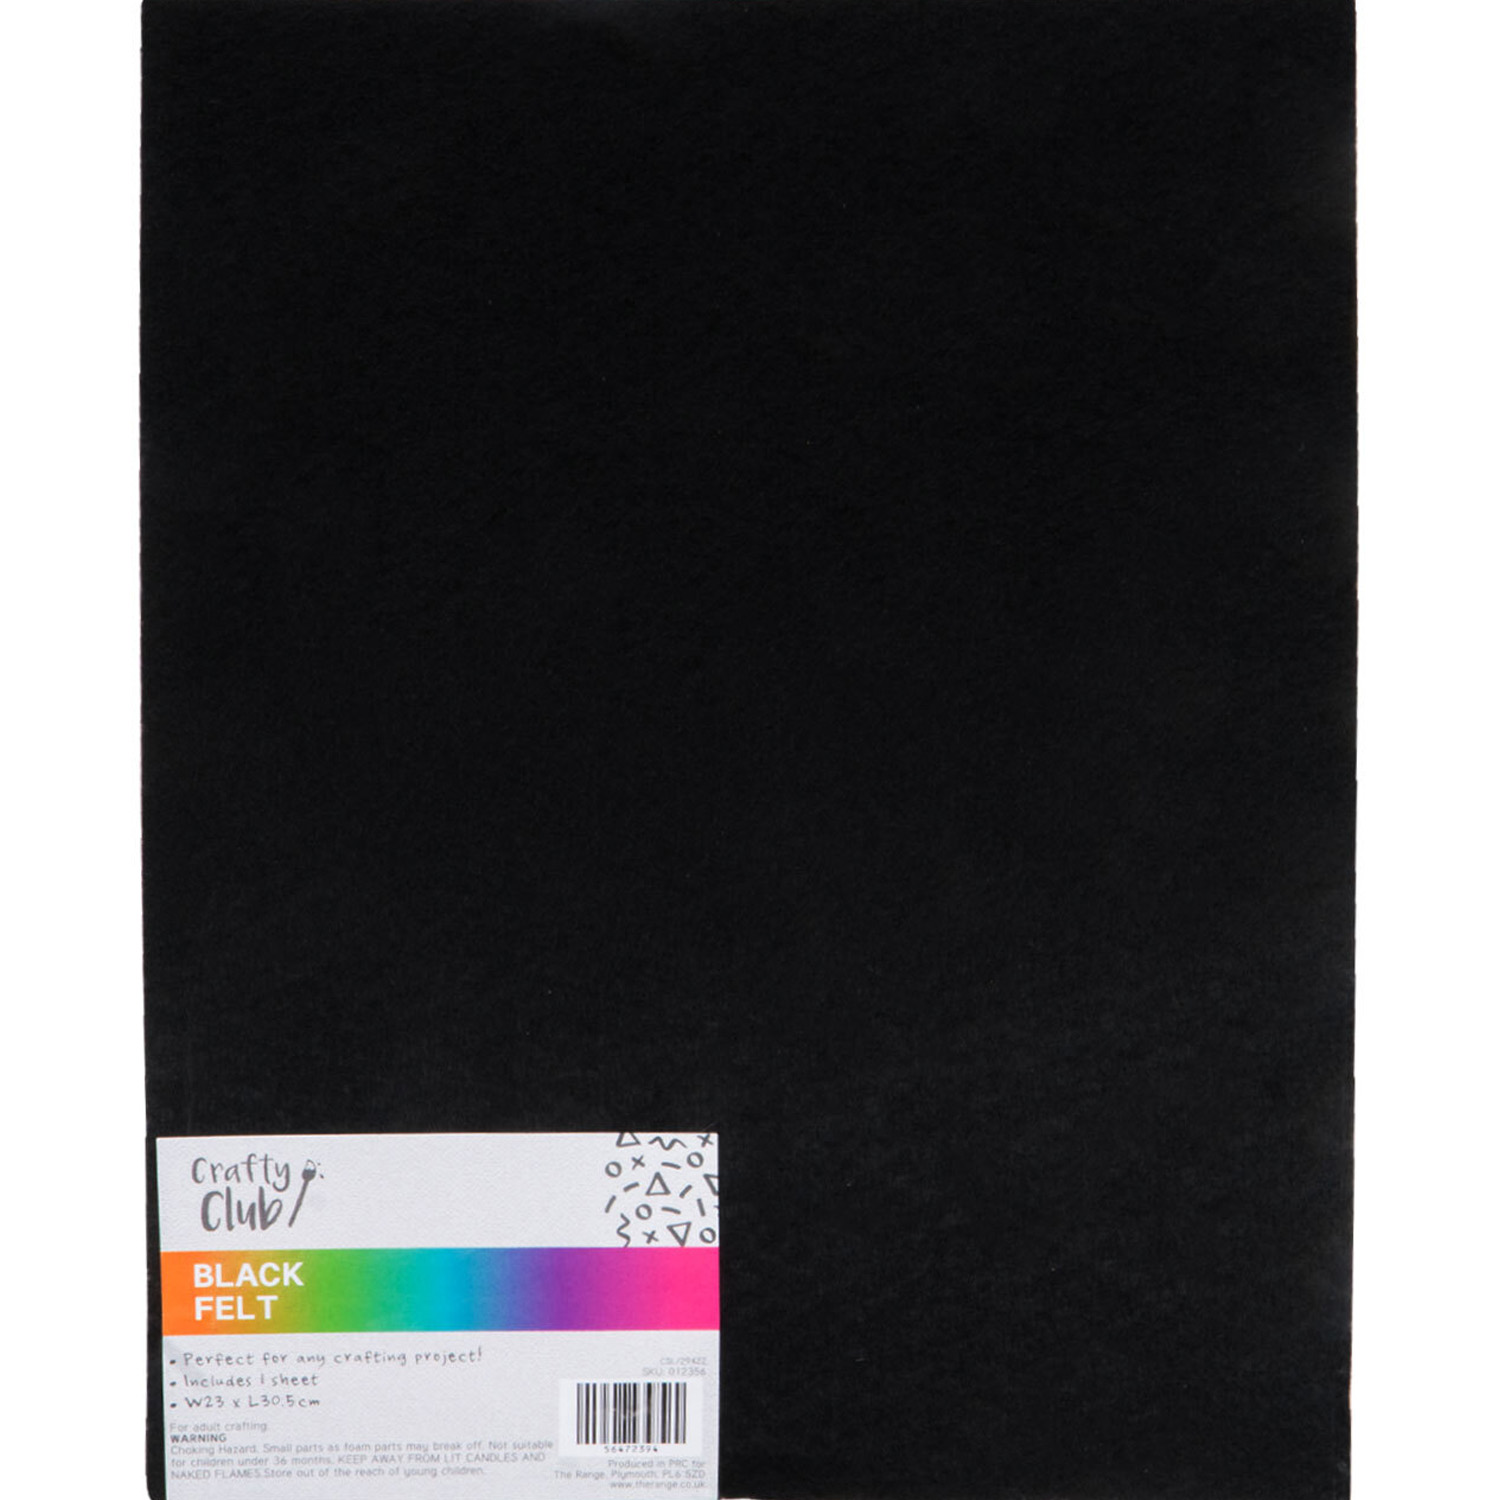 Crafty Club Felt Sheet - Black Image 1